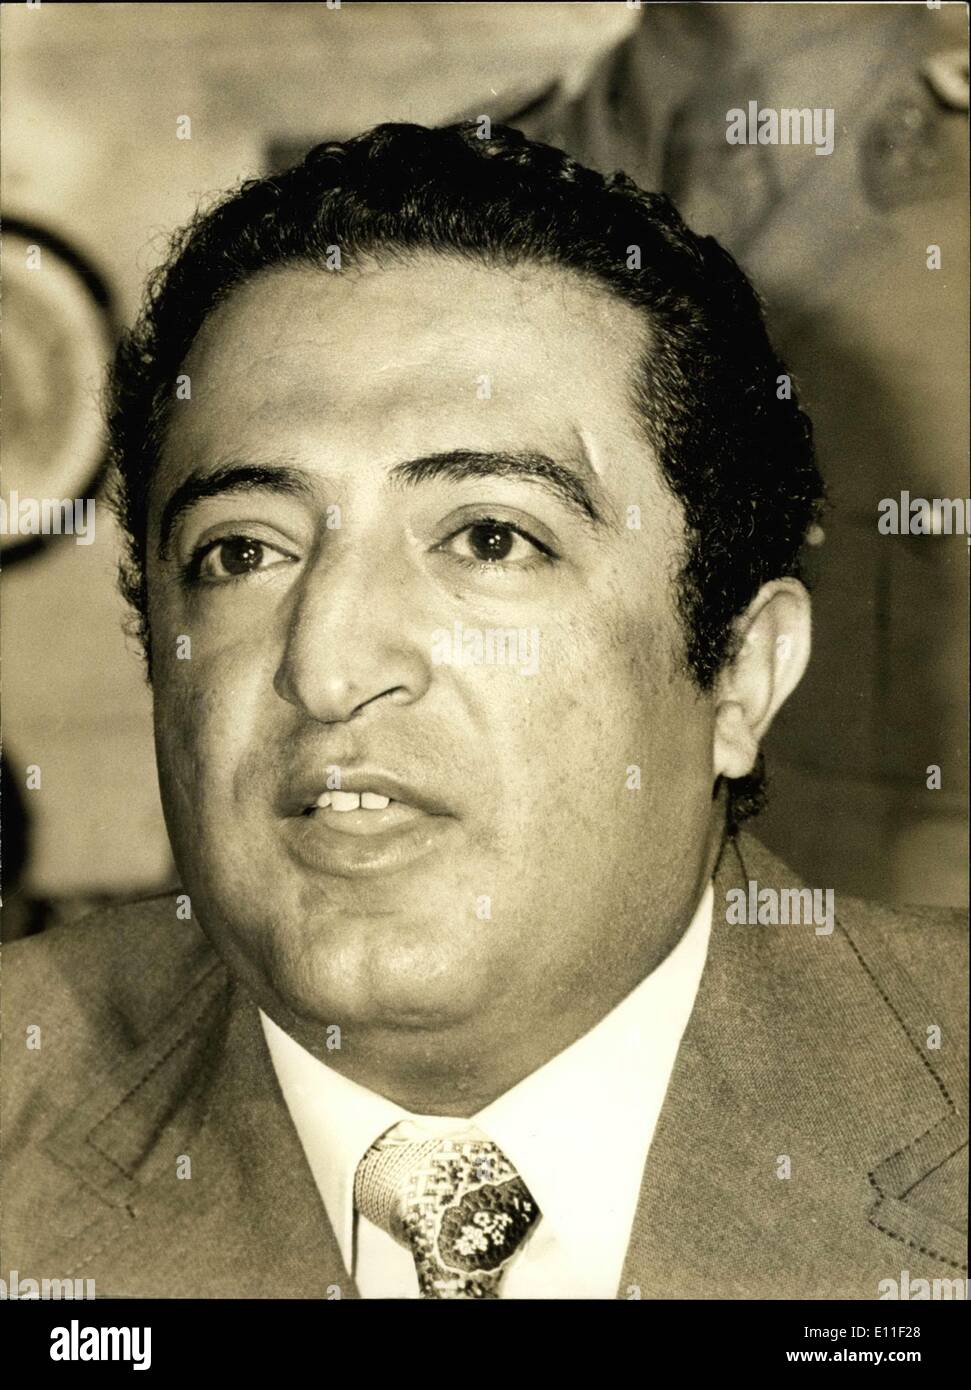 Juillet 06, 1977 - Hamdi est le commandant en chef des Forces armées au Yémen. Il a tenu une conférence de presse au cours de sa visite officielle à Paris. Banque D'Images